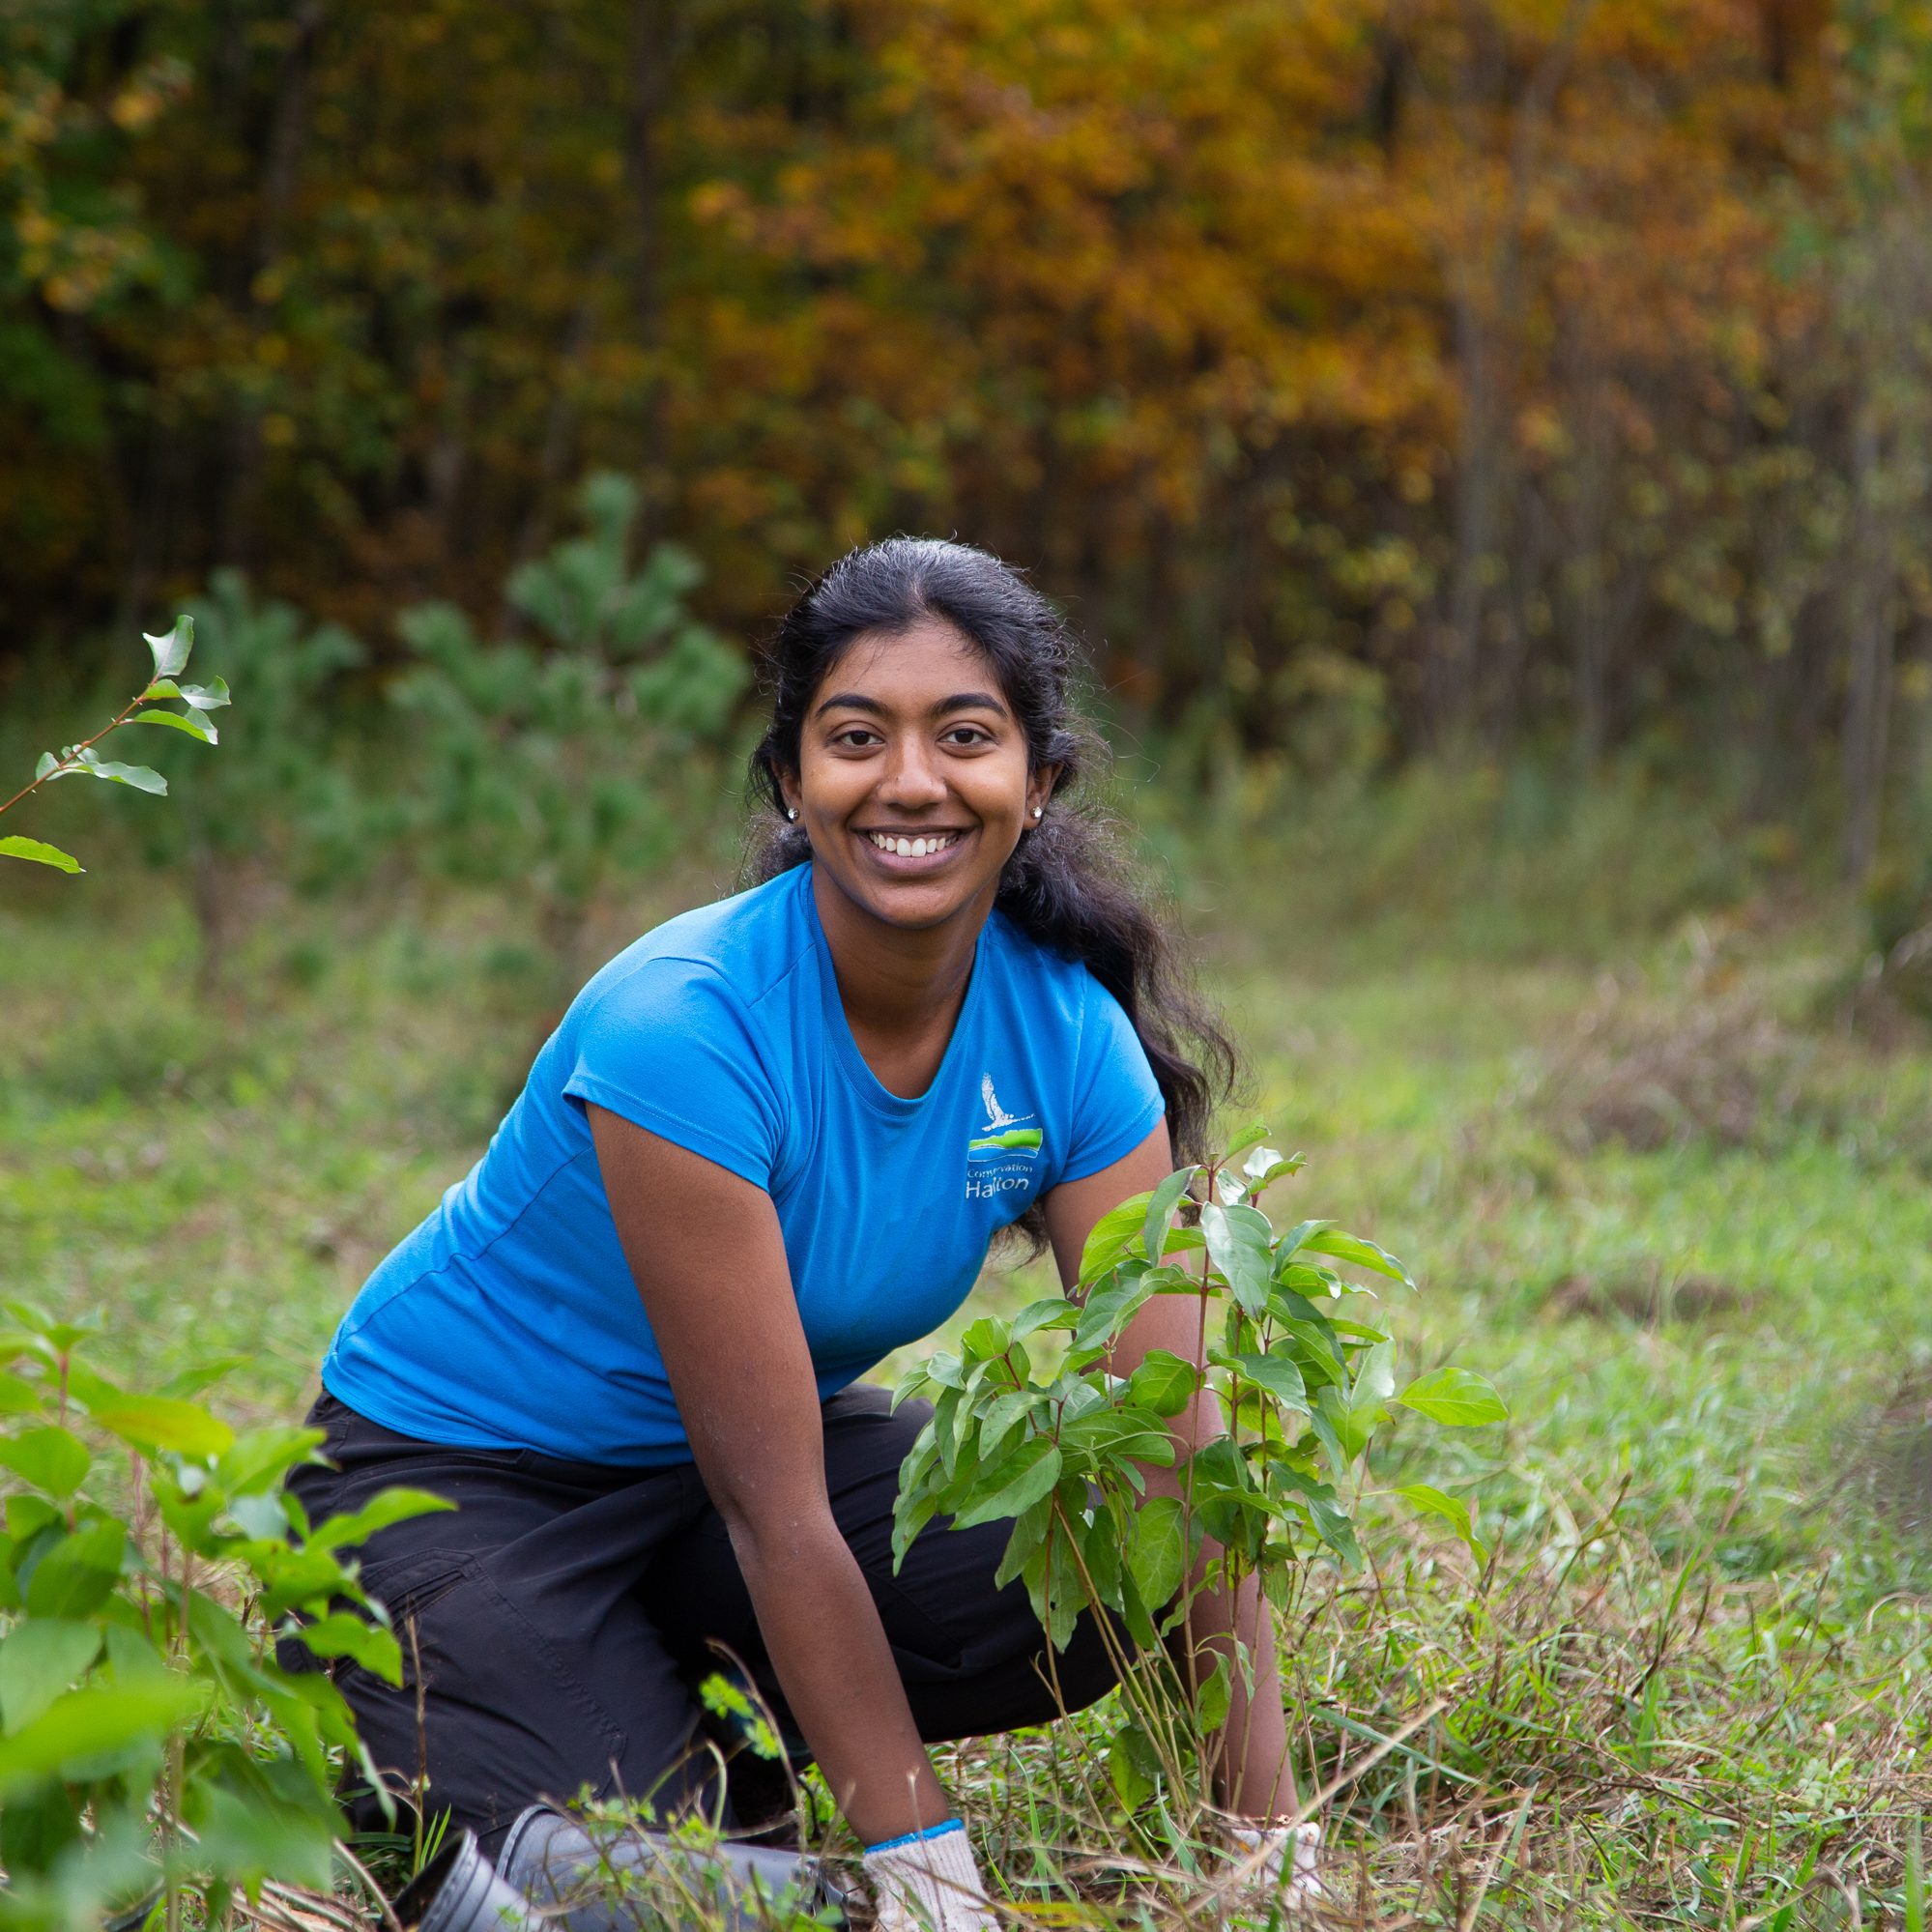 Une femme sourit à l'appareil photo alors qu'elle plante un arbre.